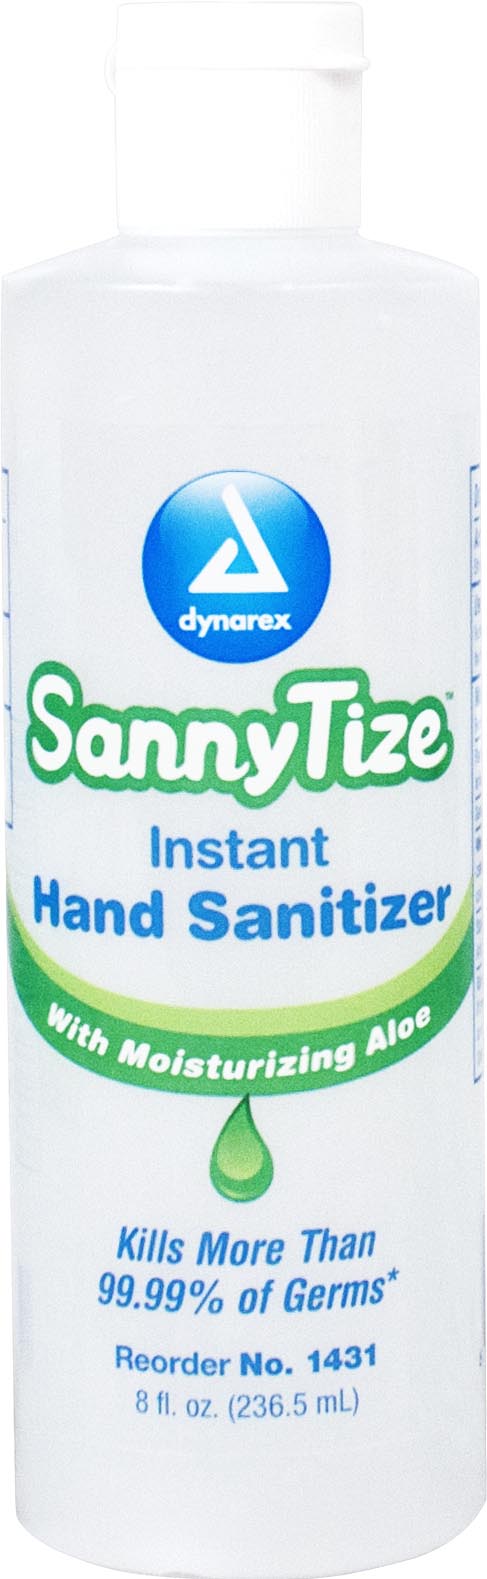 1431 Dynarex sanyze即时洗手液含有62%的乙醇，包装在一个8盎司的瓶子里